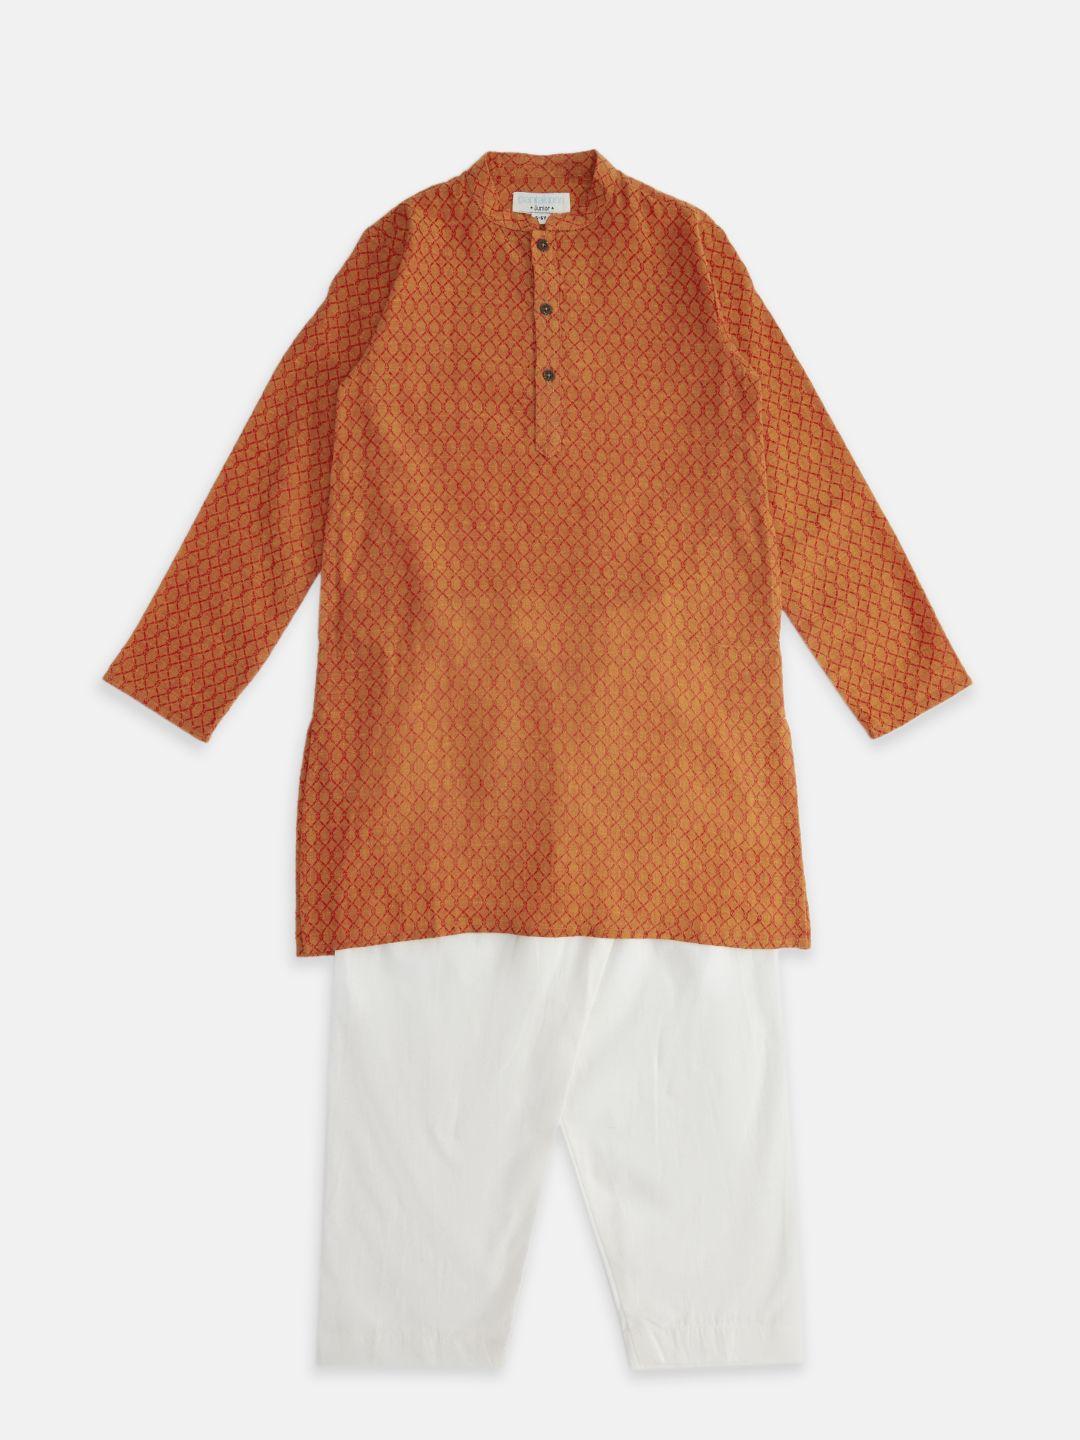 indus route by pantaloons boys orange printed pure cotton kurta with pyjama set